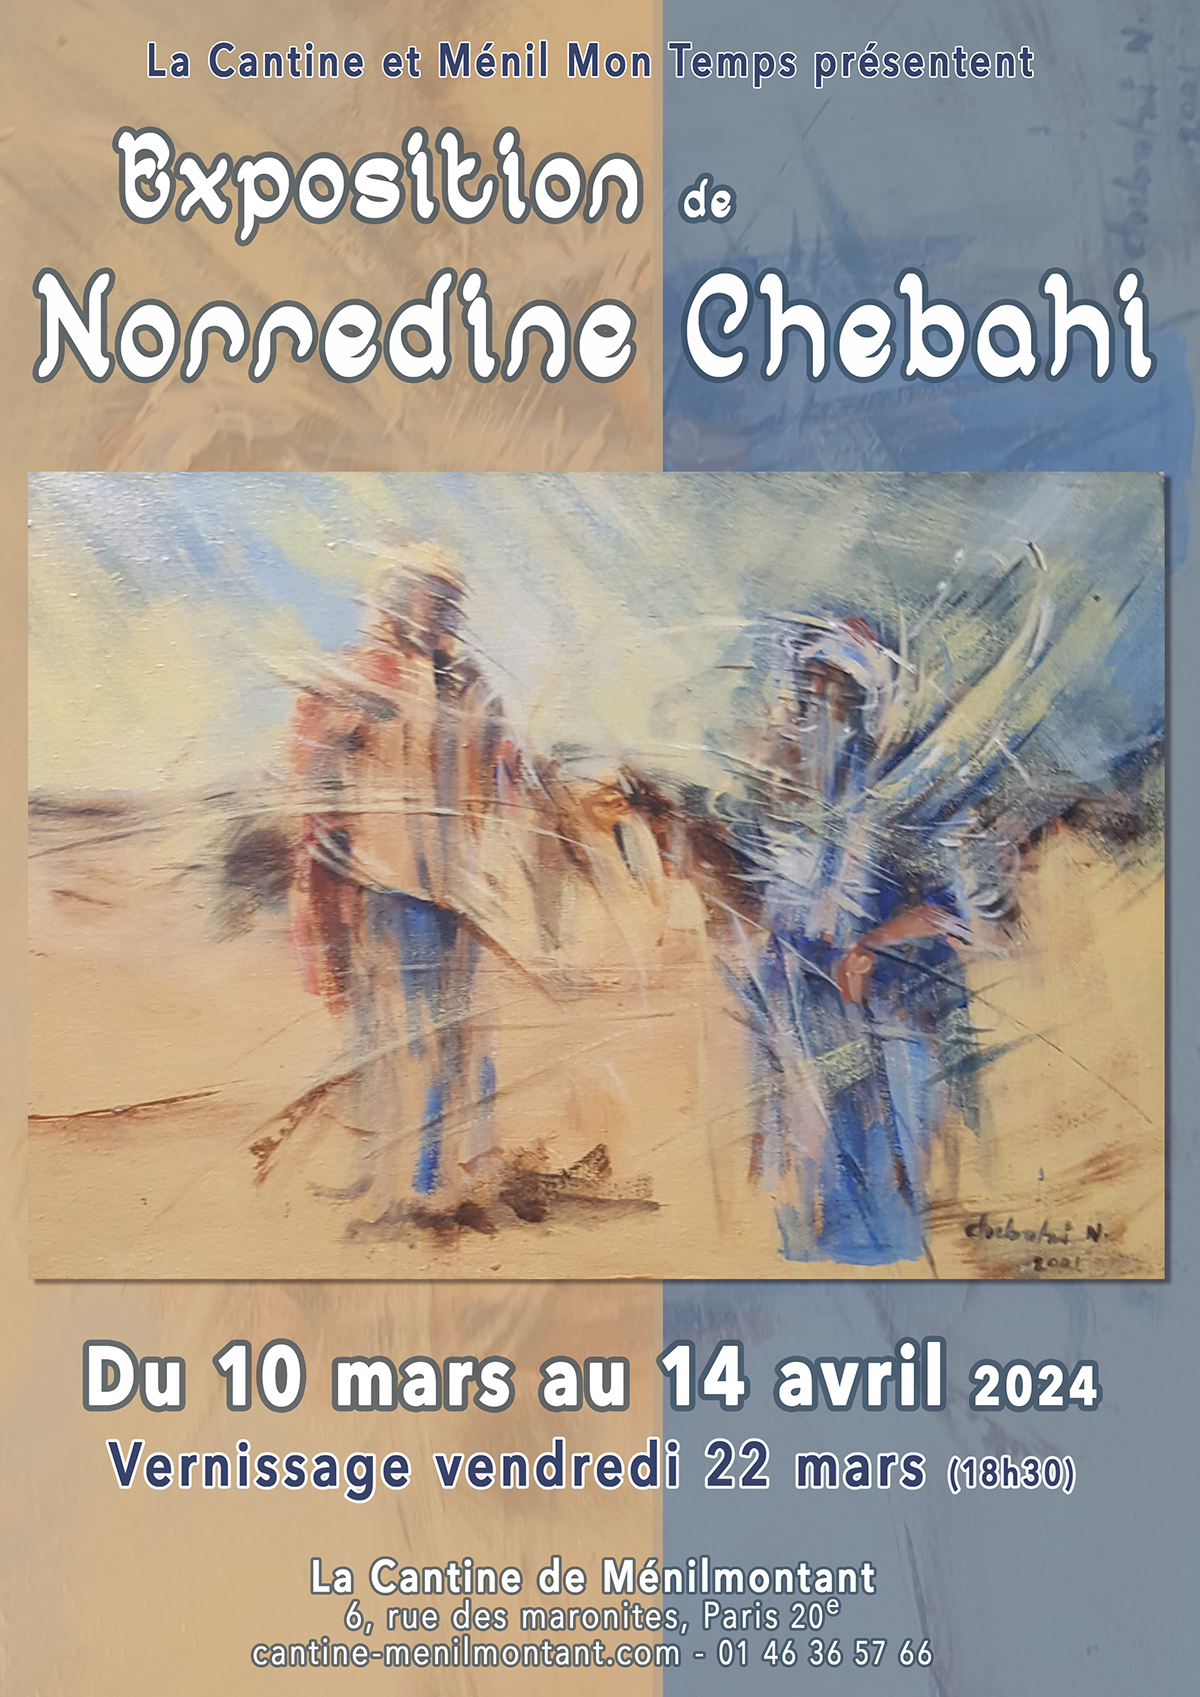 Norredine Chebahi expose à la Cantine de Ménilmontant du 10 mars au 15 avril 2024